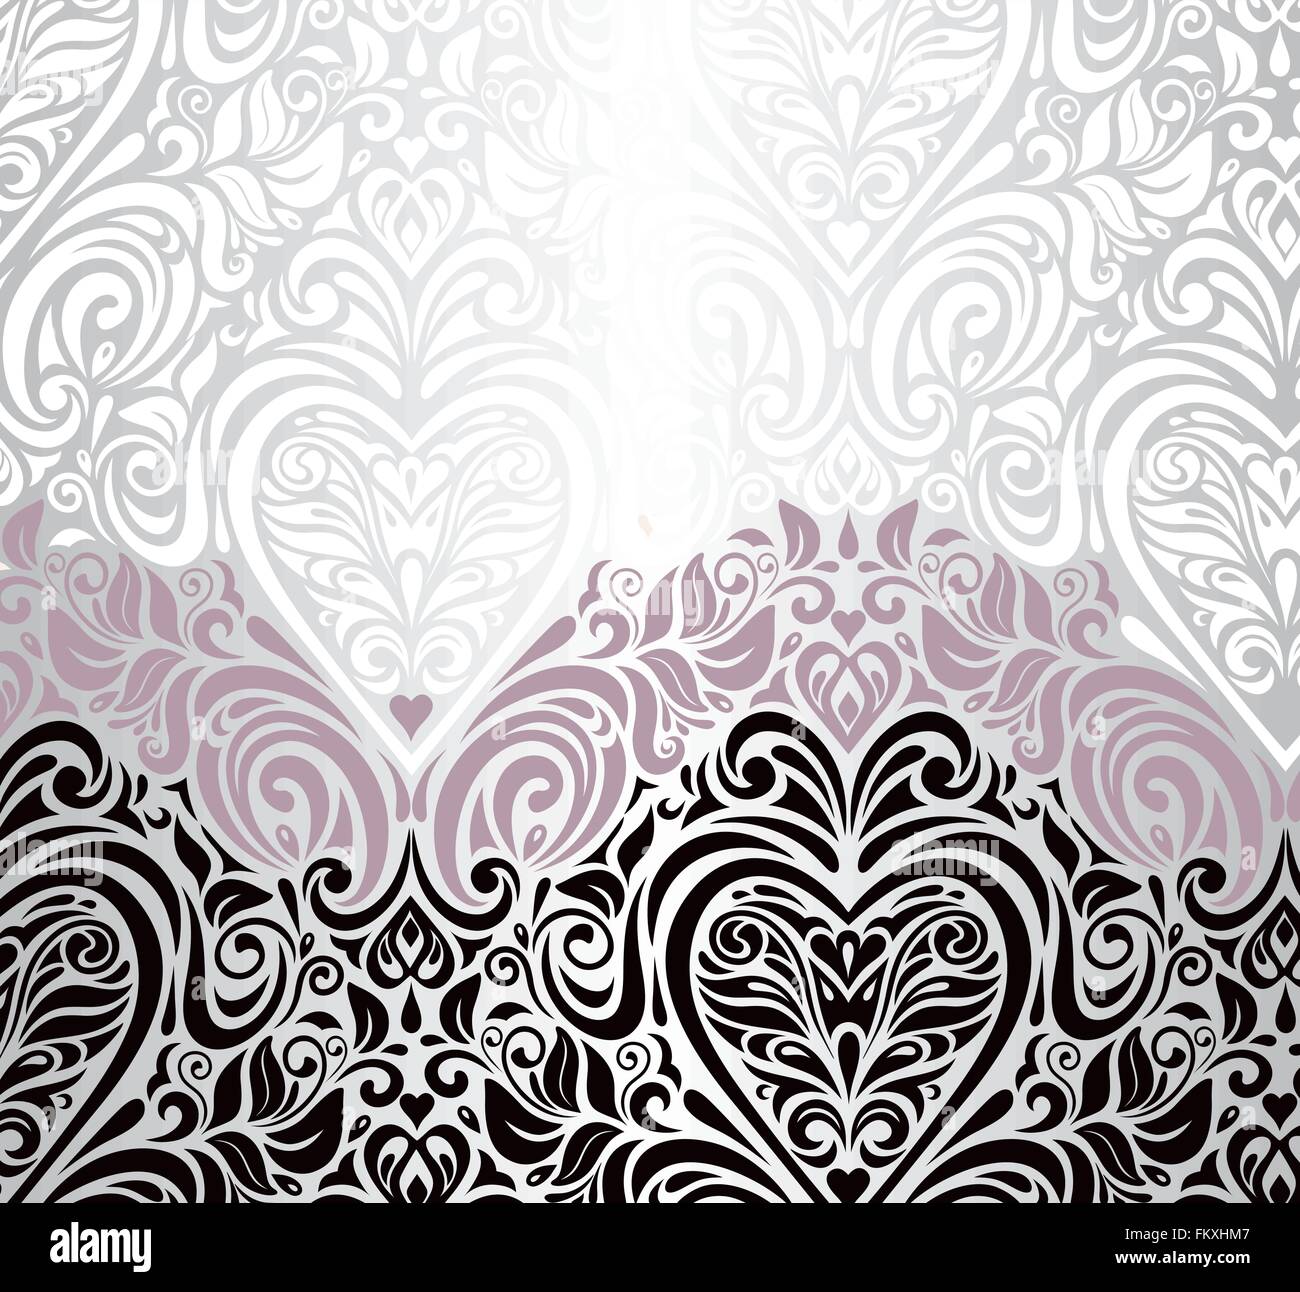 Argent rose et noir vintage mariage invitation floral background avec symbole ornamen coeurs Illustration de Vecteur